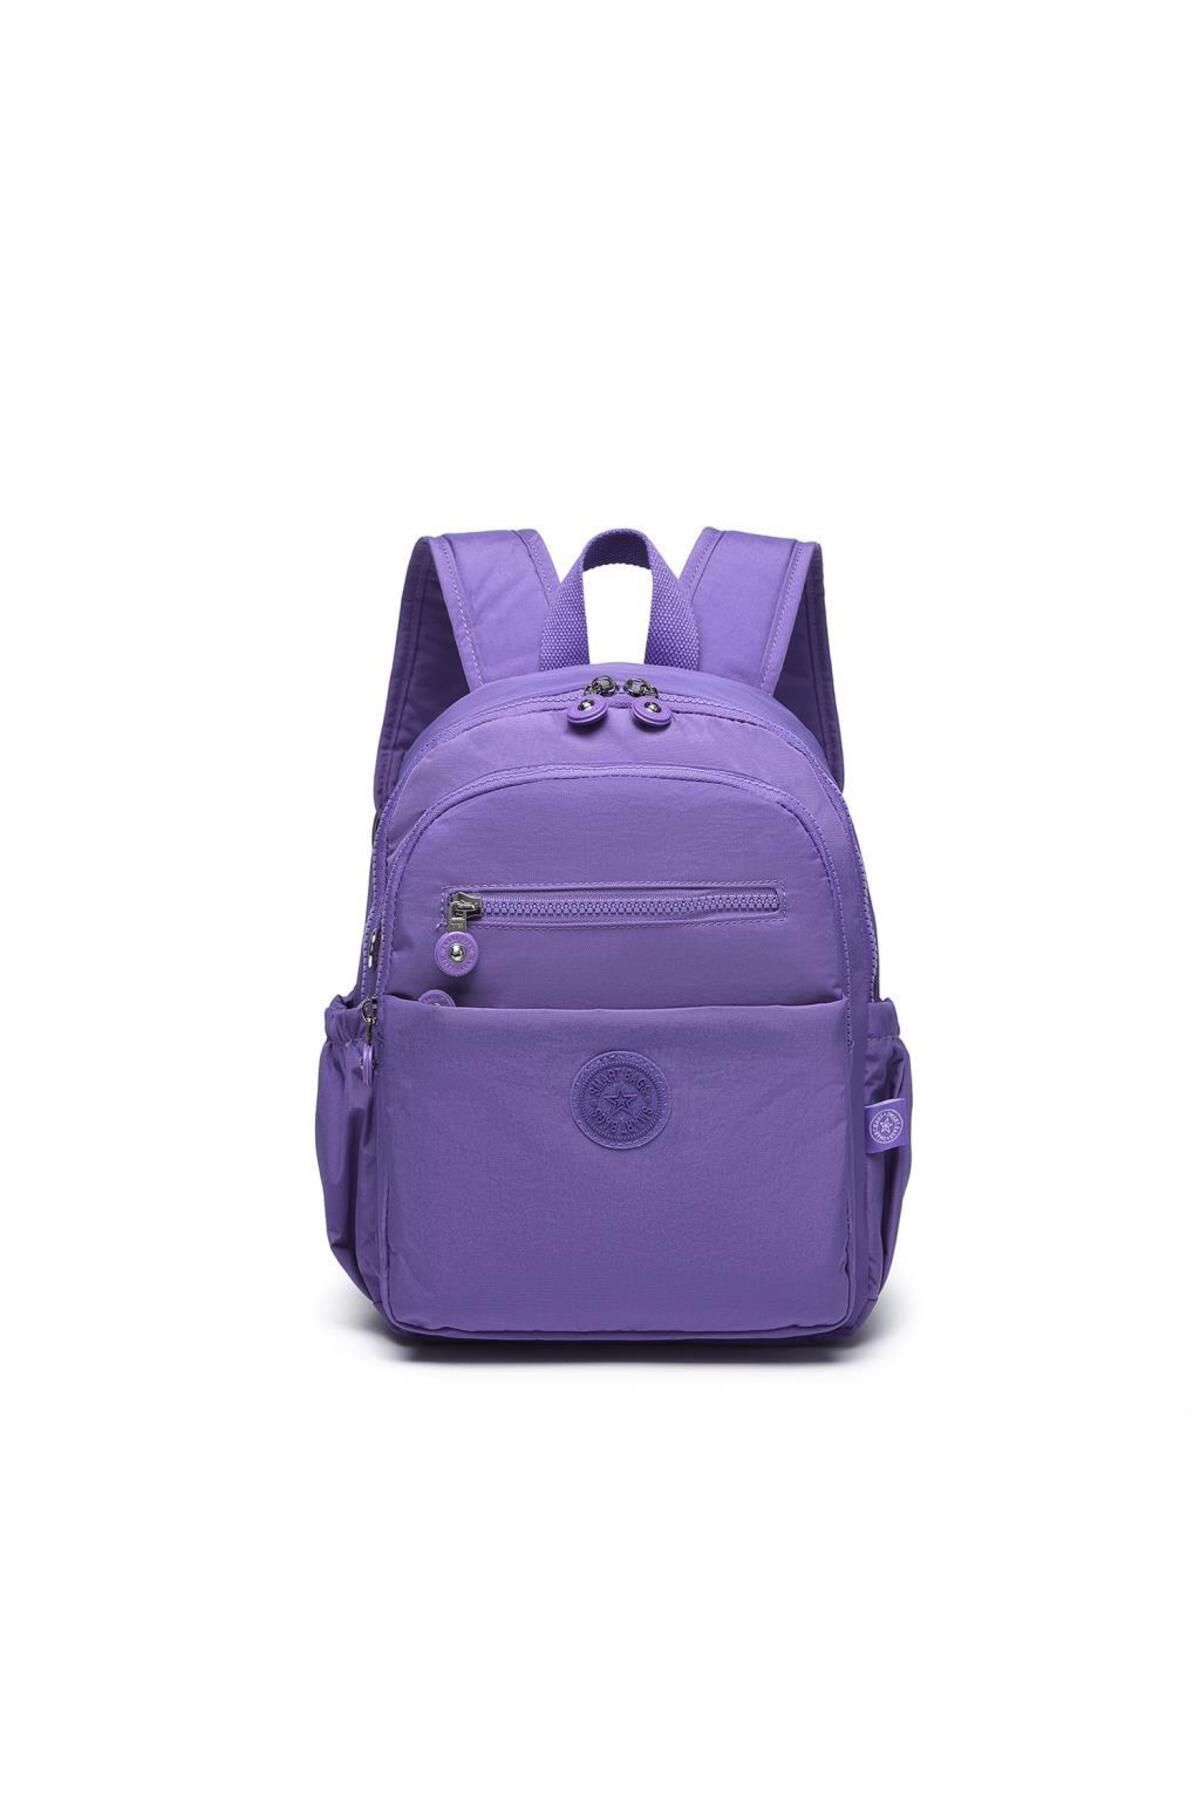 Smart Bags Orta Boy Kadın Sırt Çantası Smart Bags Krinkıl Kumaş 3230